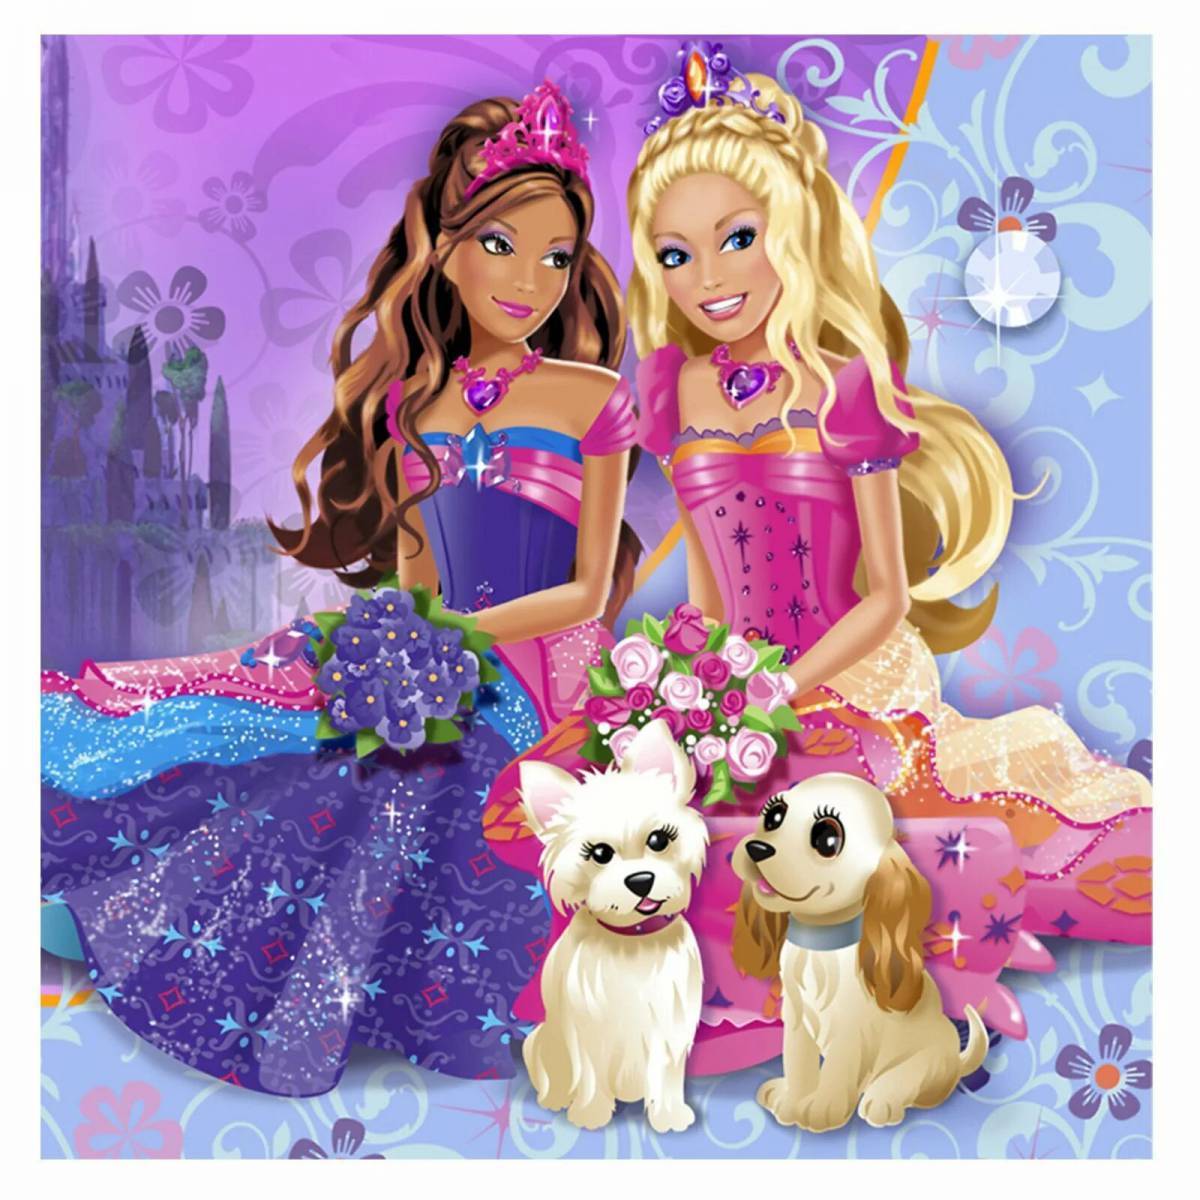 Картинки для девочек. Картина Барби. Мультики для девочек. Принцесса собачка. Модные мультики для девочек.